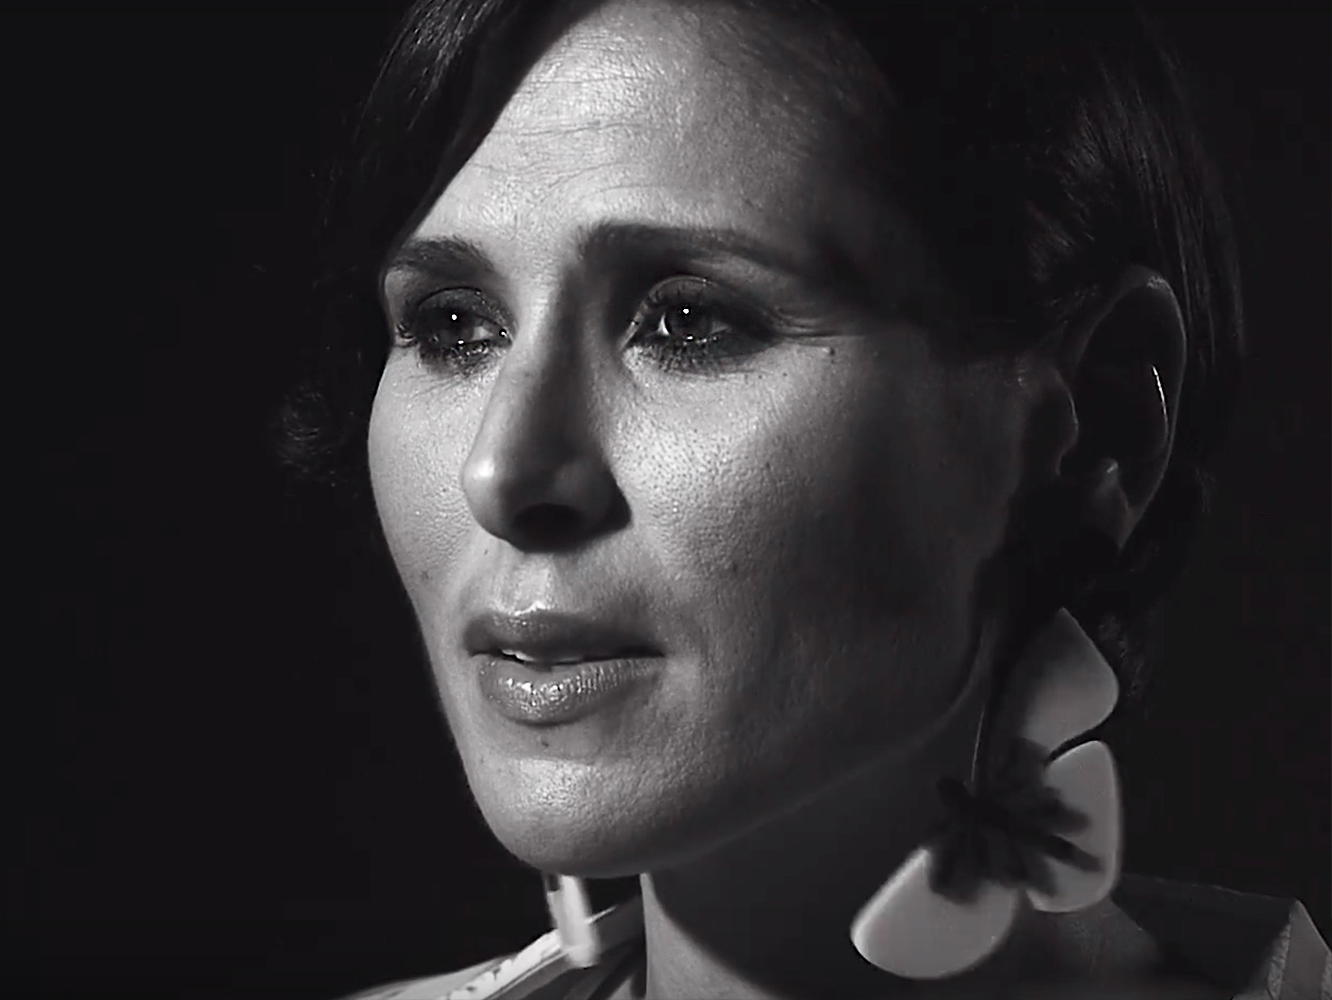 Rosa López comunica con un místico vídeo que Universal Music ha roto con ella